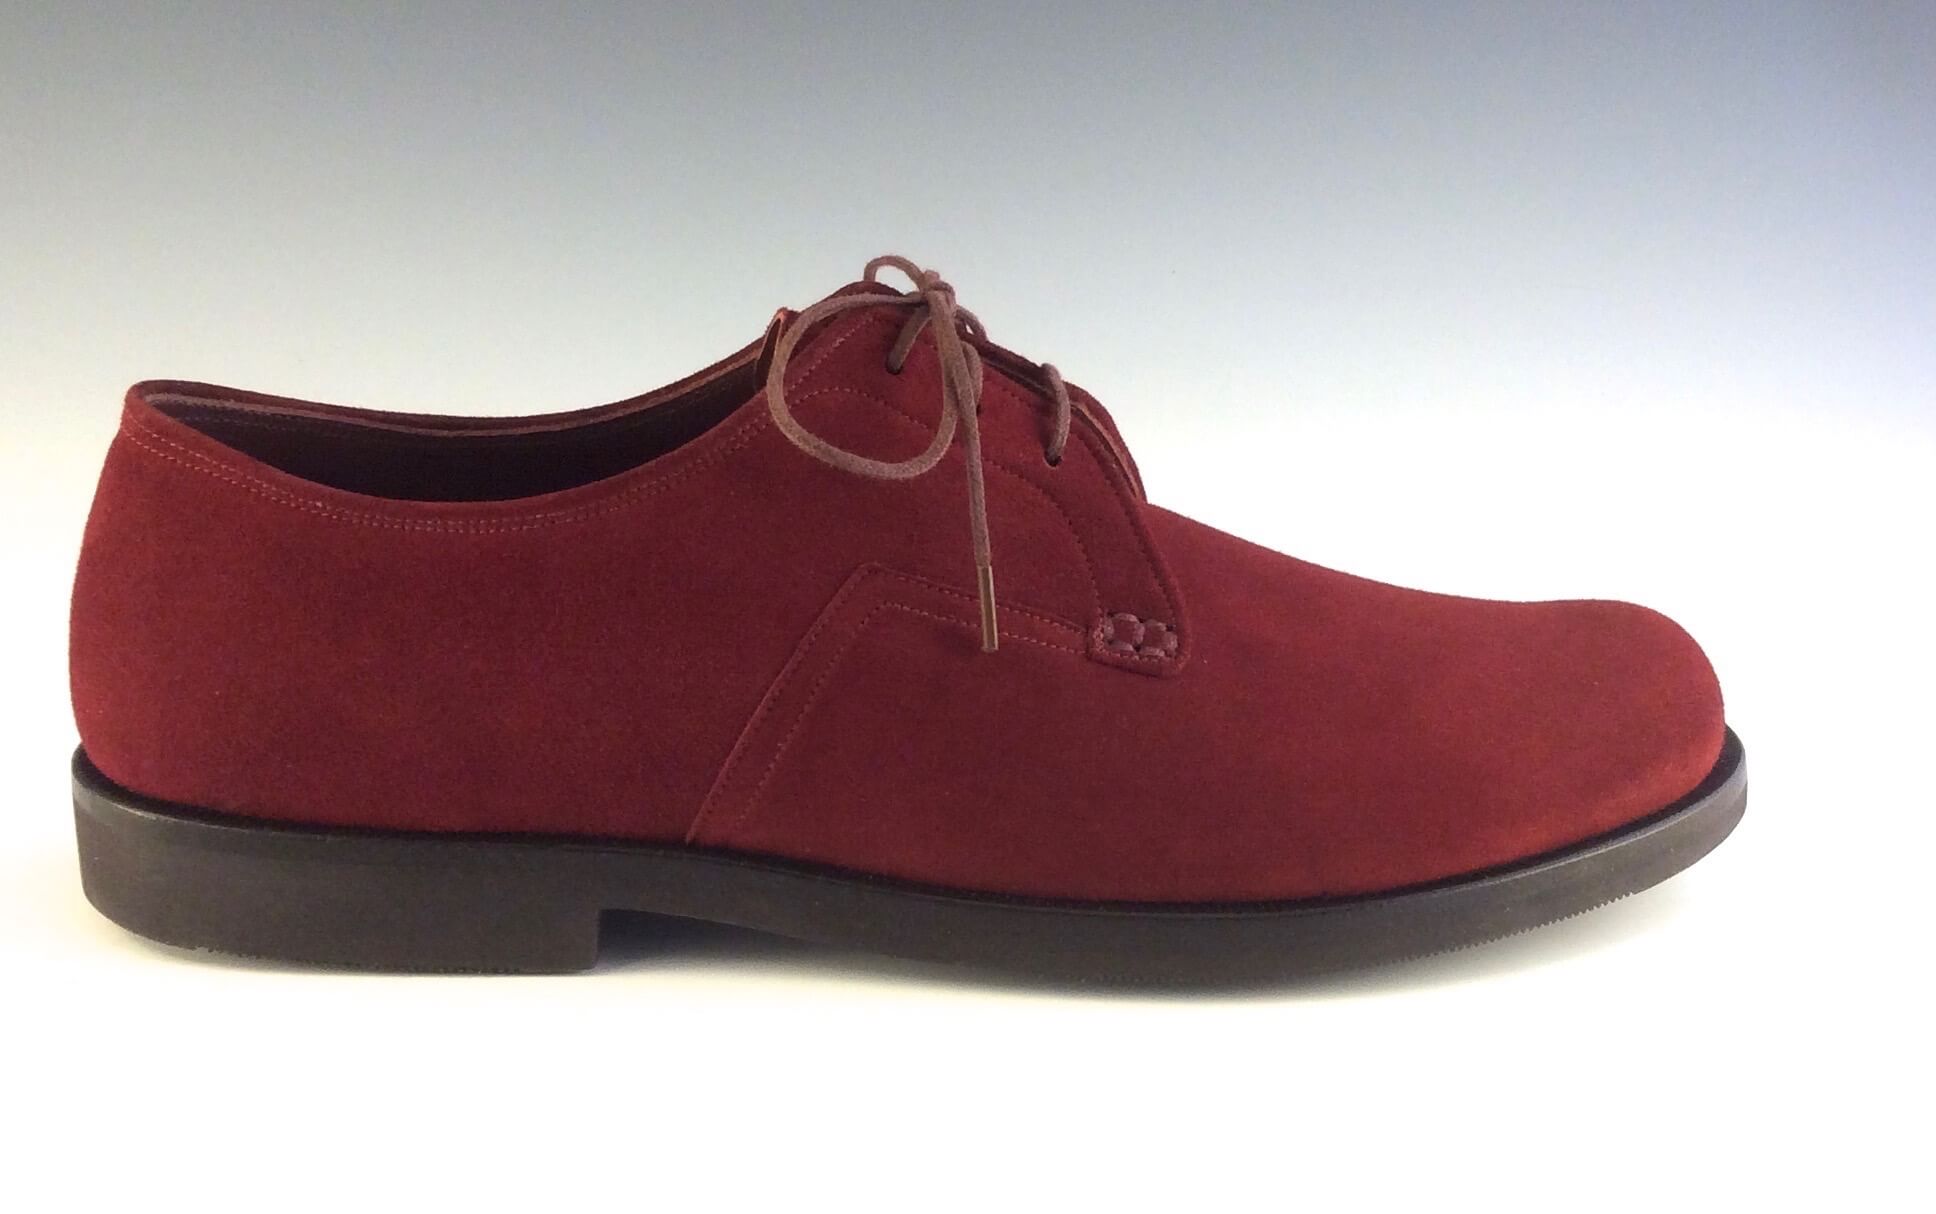 Oxfords ~ Robert Mathews Custom Shoemaker